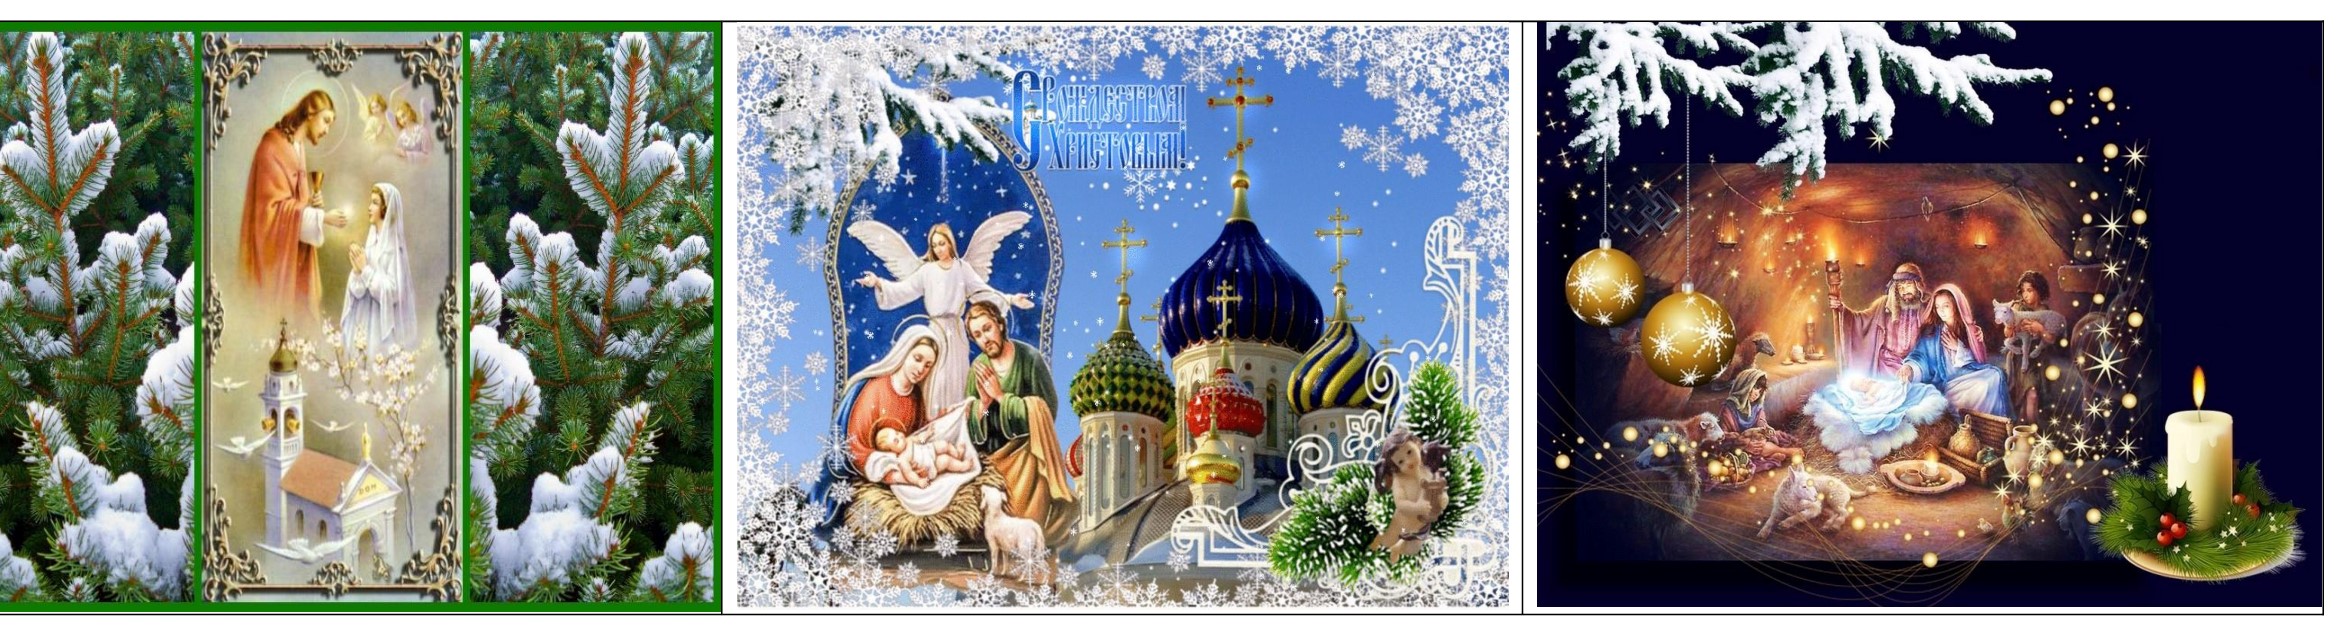 Замечательные рождественские открытки смастерили челны кружка " В мире графики"